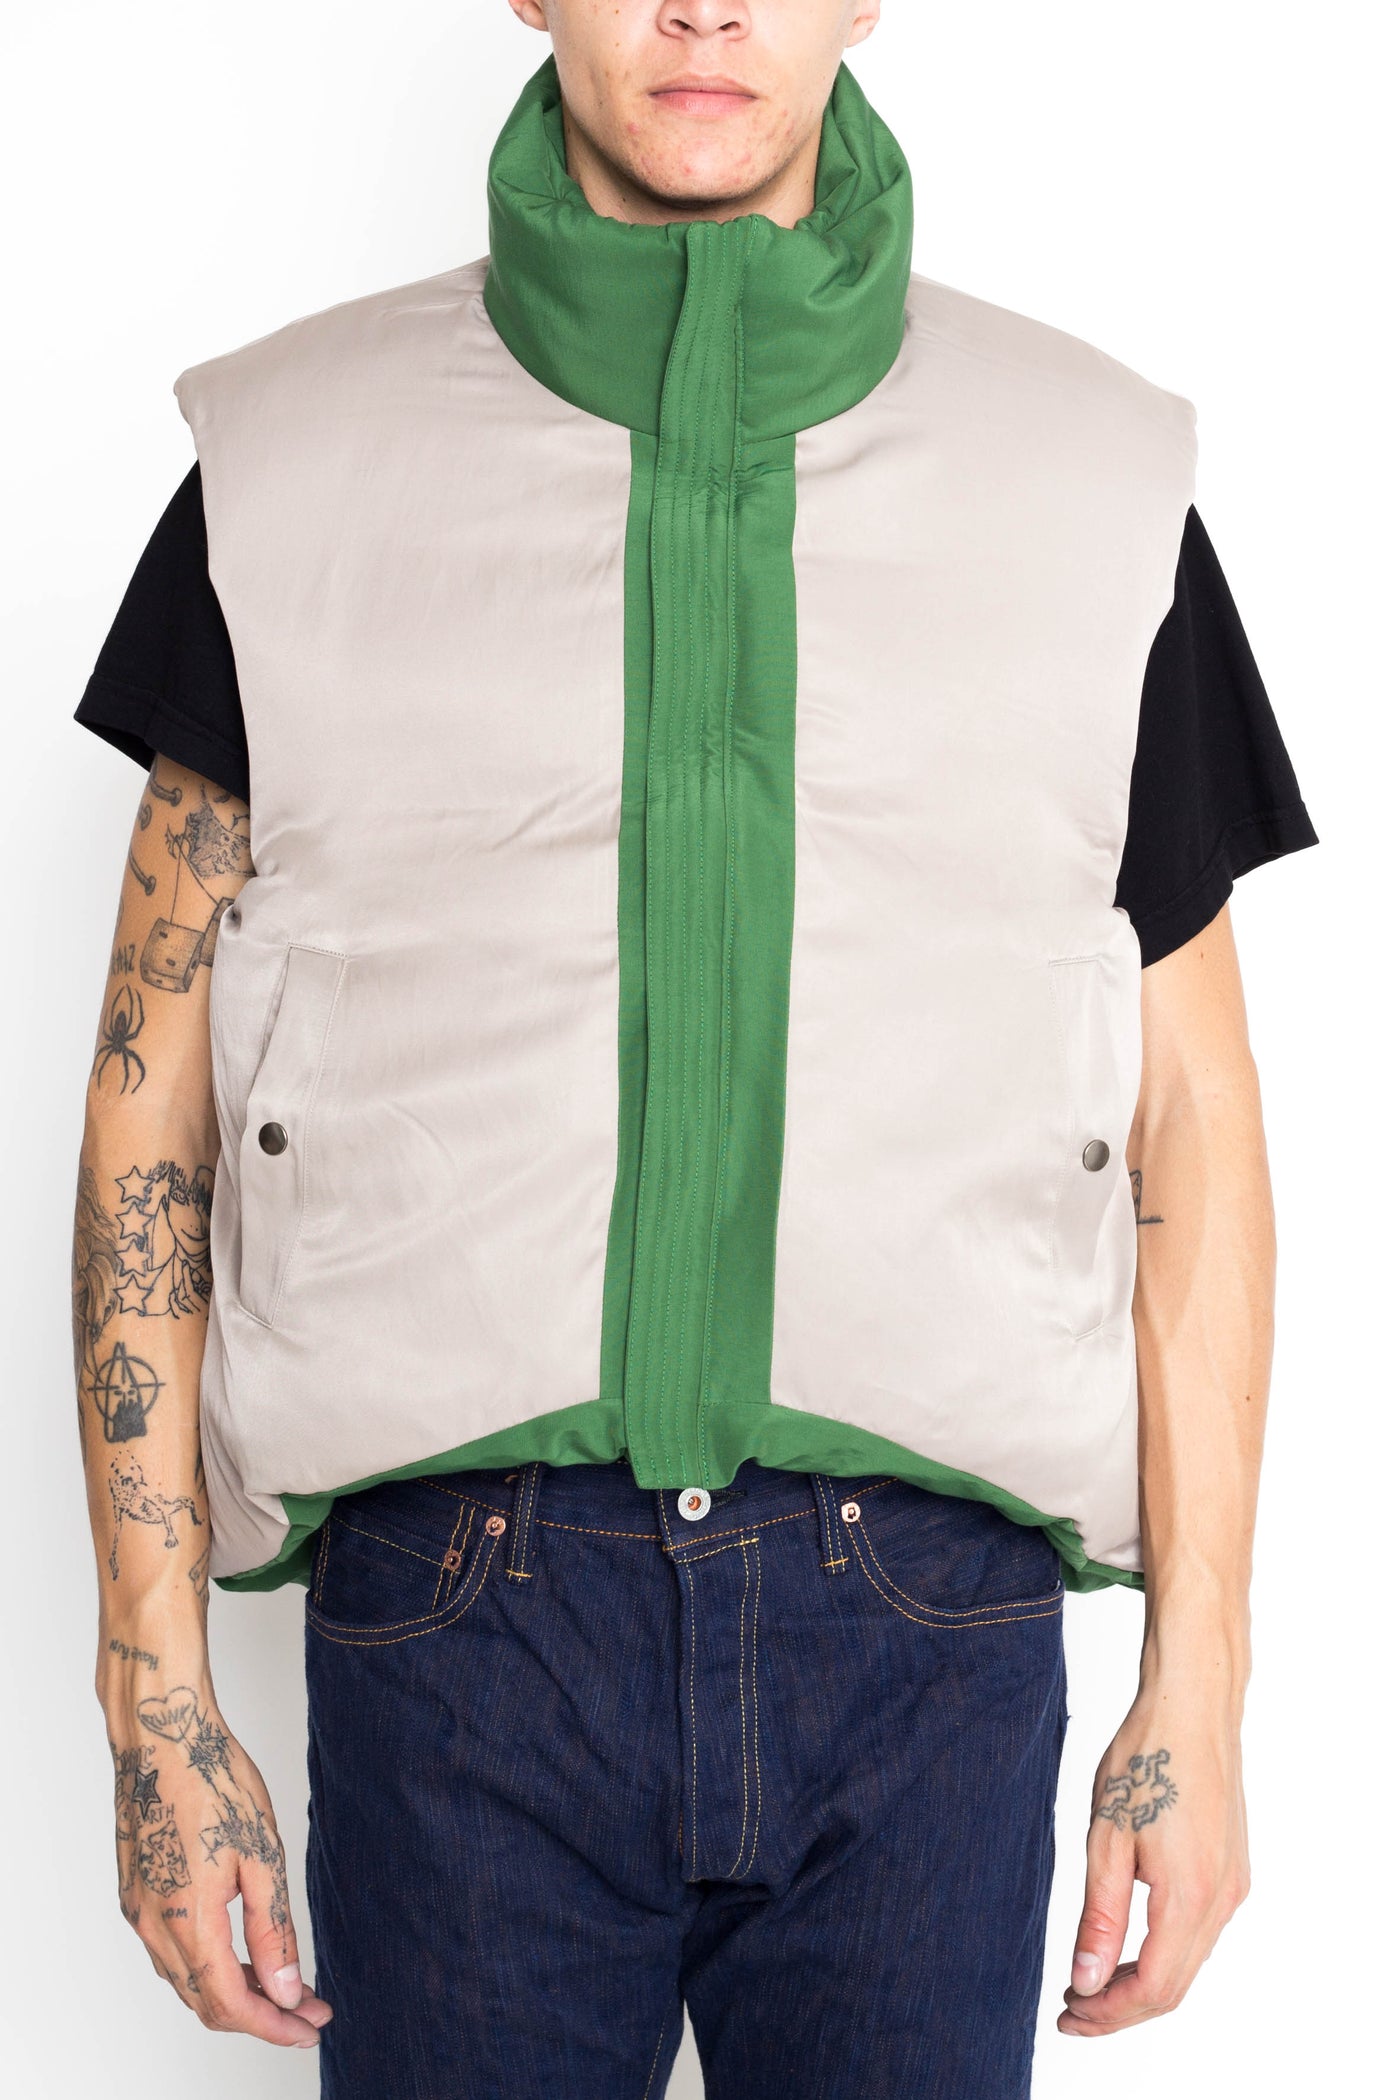 60/40 Cloth BURGER KEEL Vest (SNOW Fade) - Green